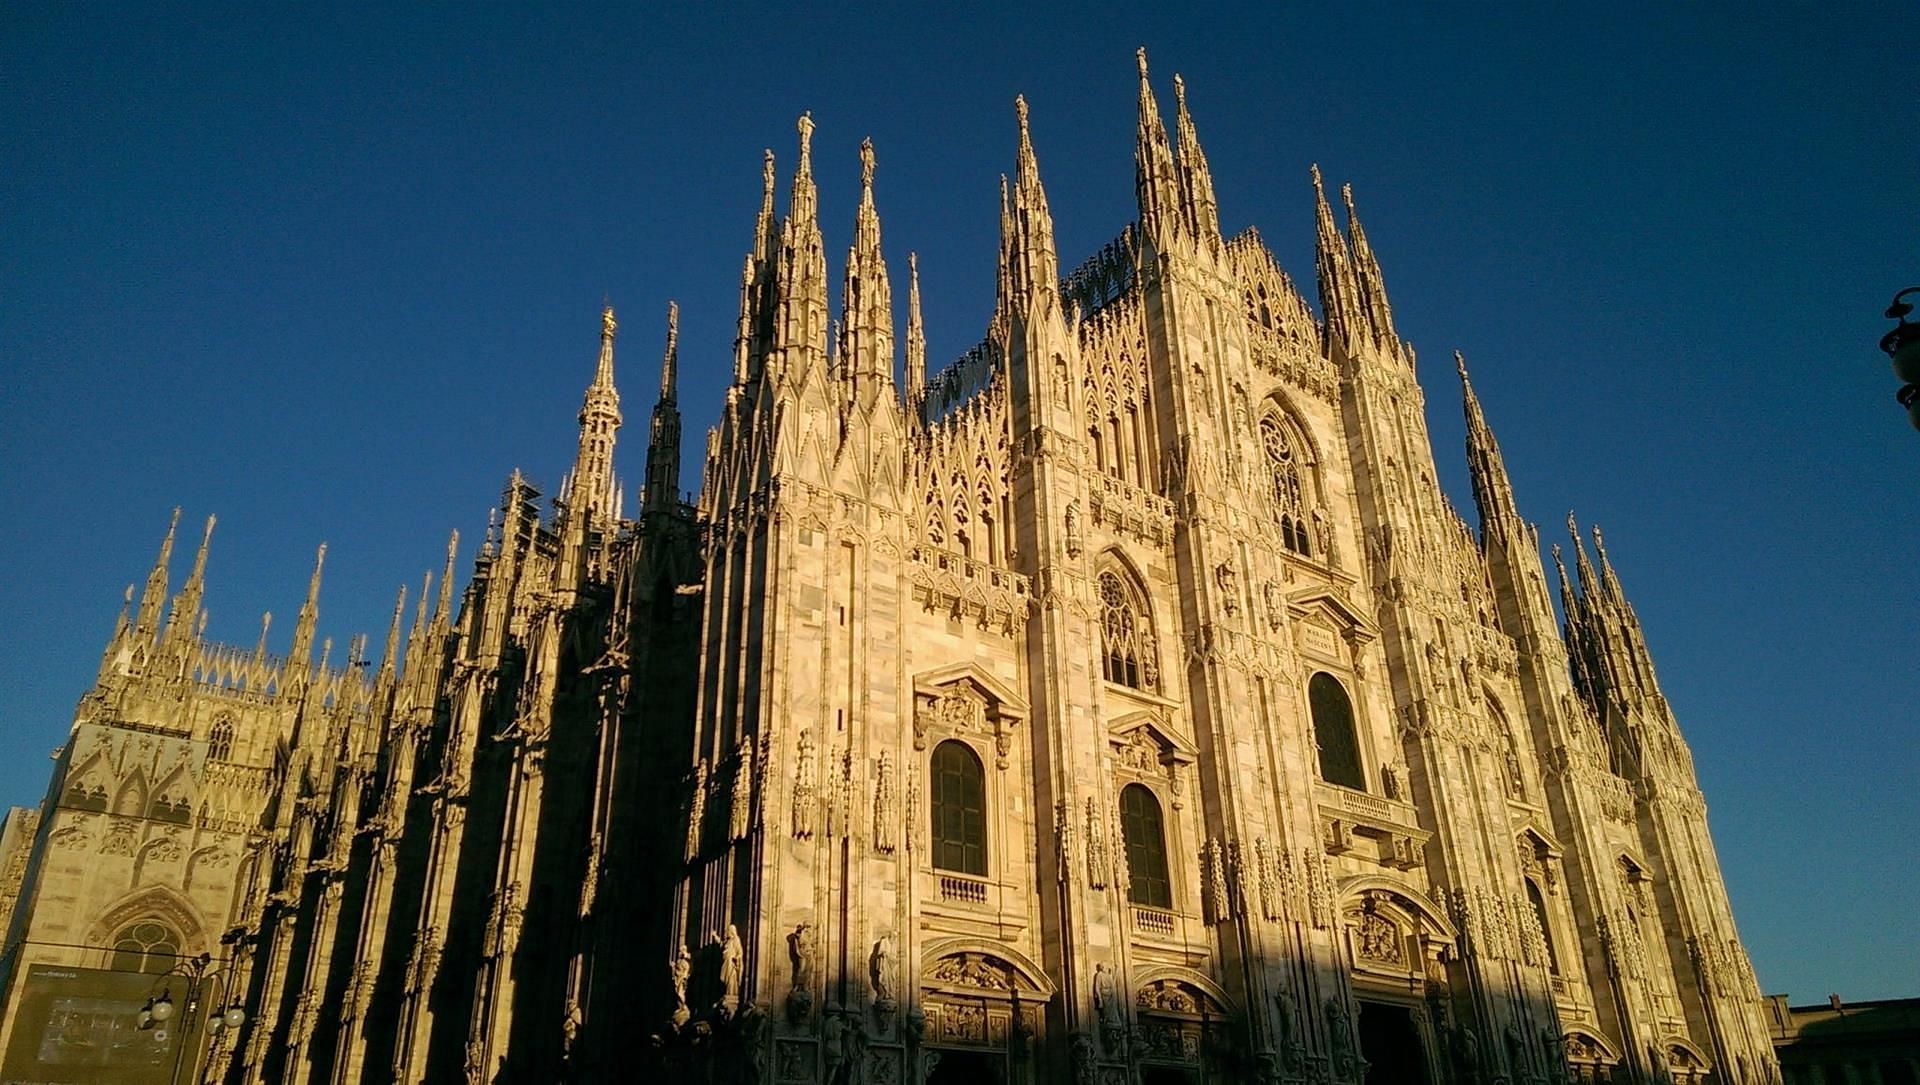 Il Duomo di Milano, Italy